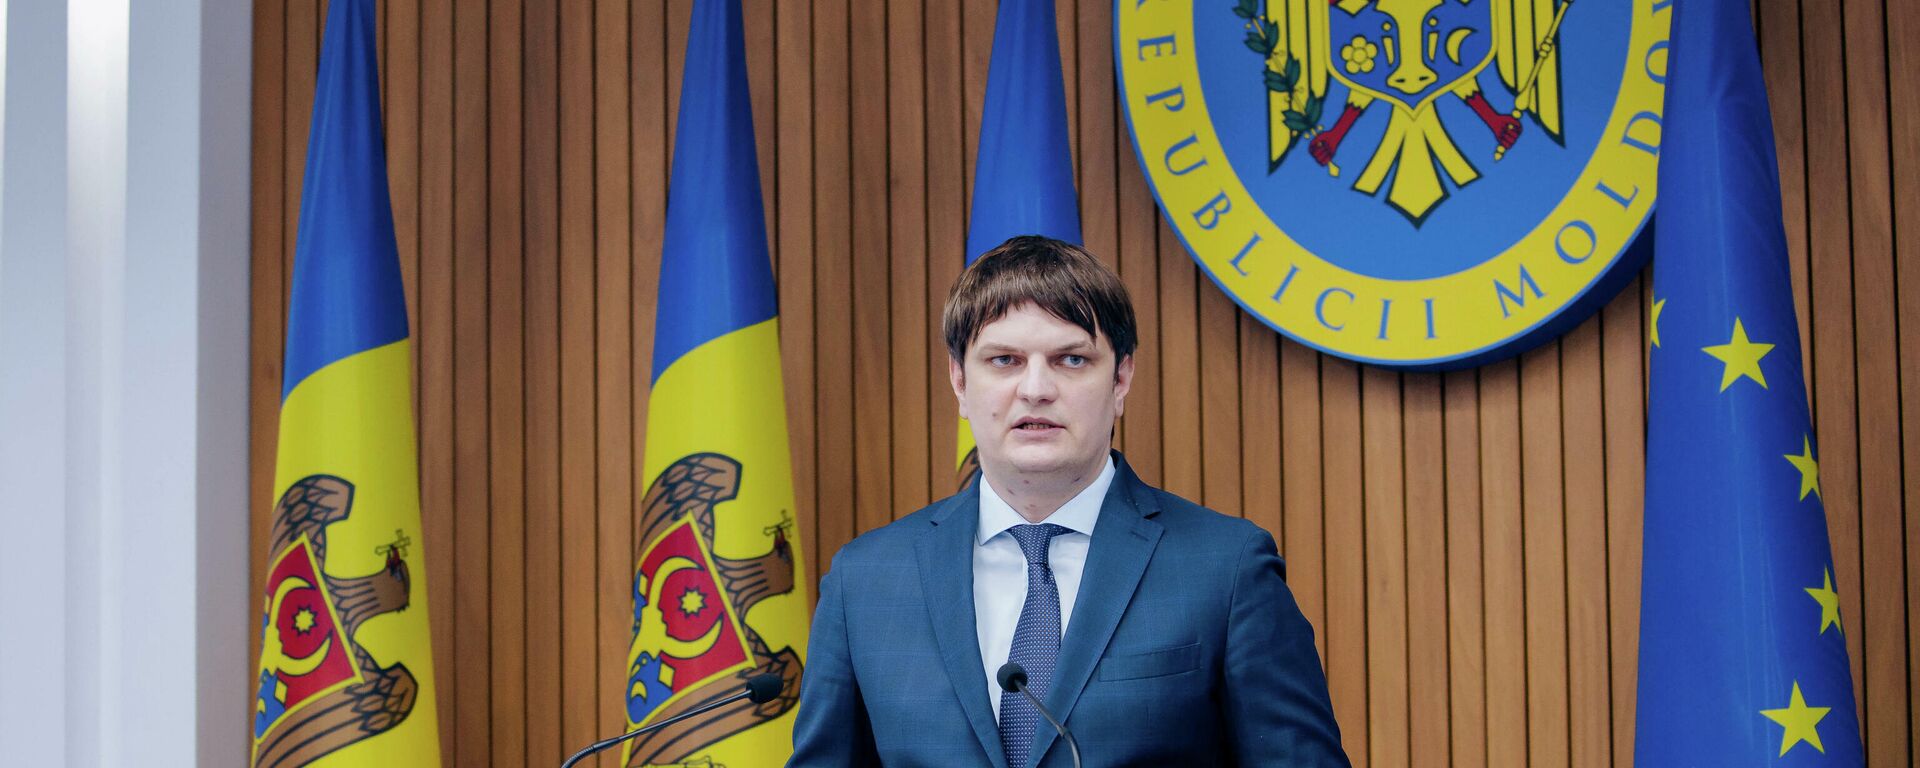 Вице-премьер Молдовы: как изменится тариф на газ для конечных потребителей - Sputnik Молдова, 1920, 01.11.2021